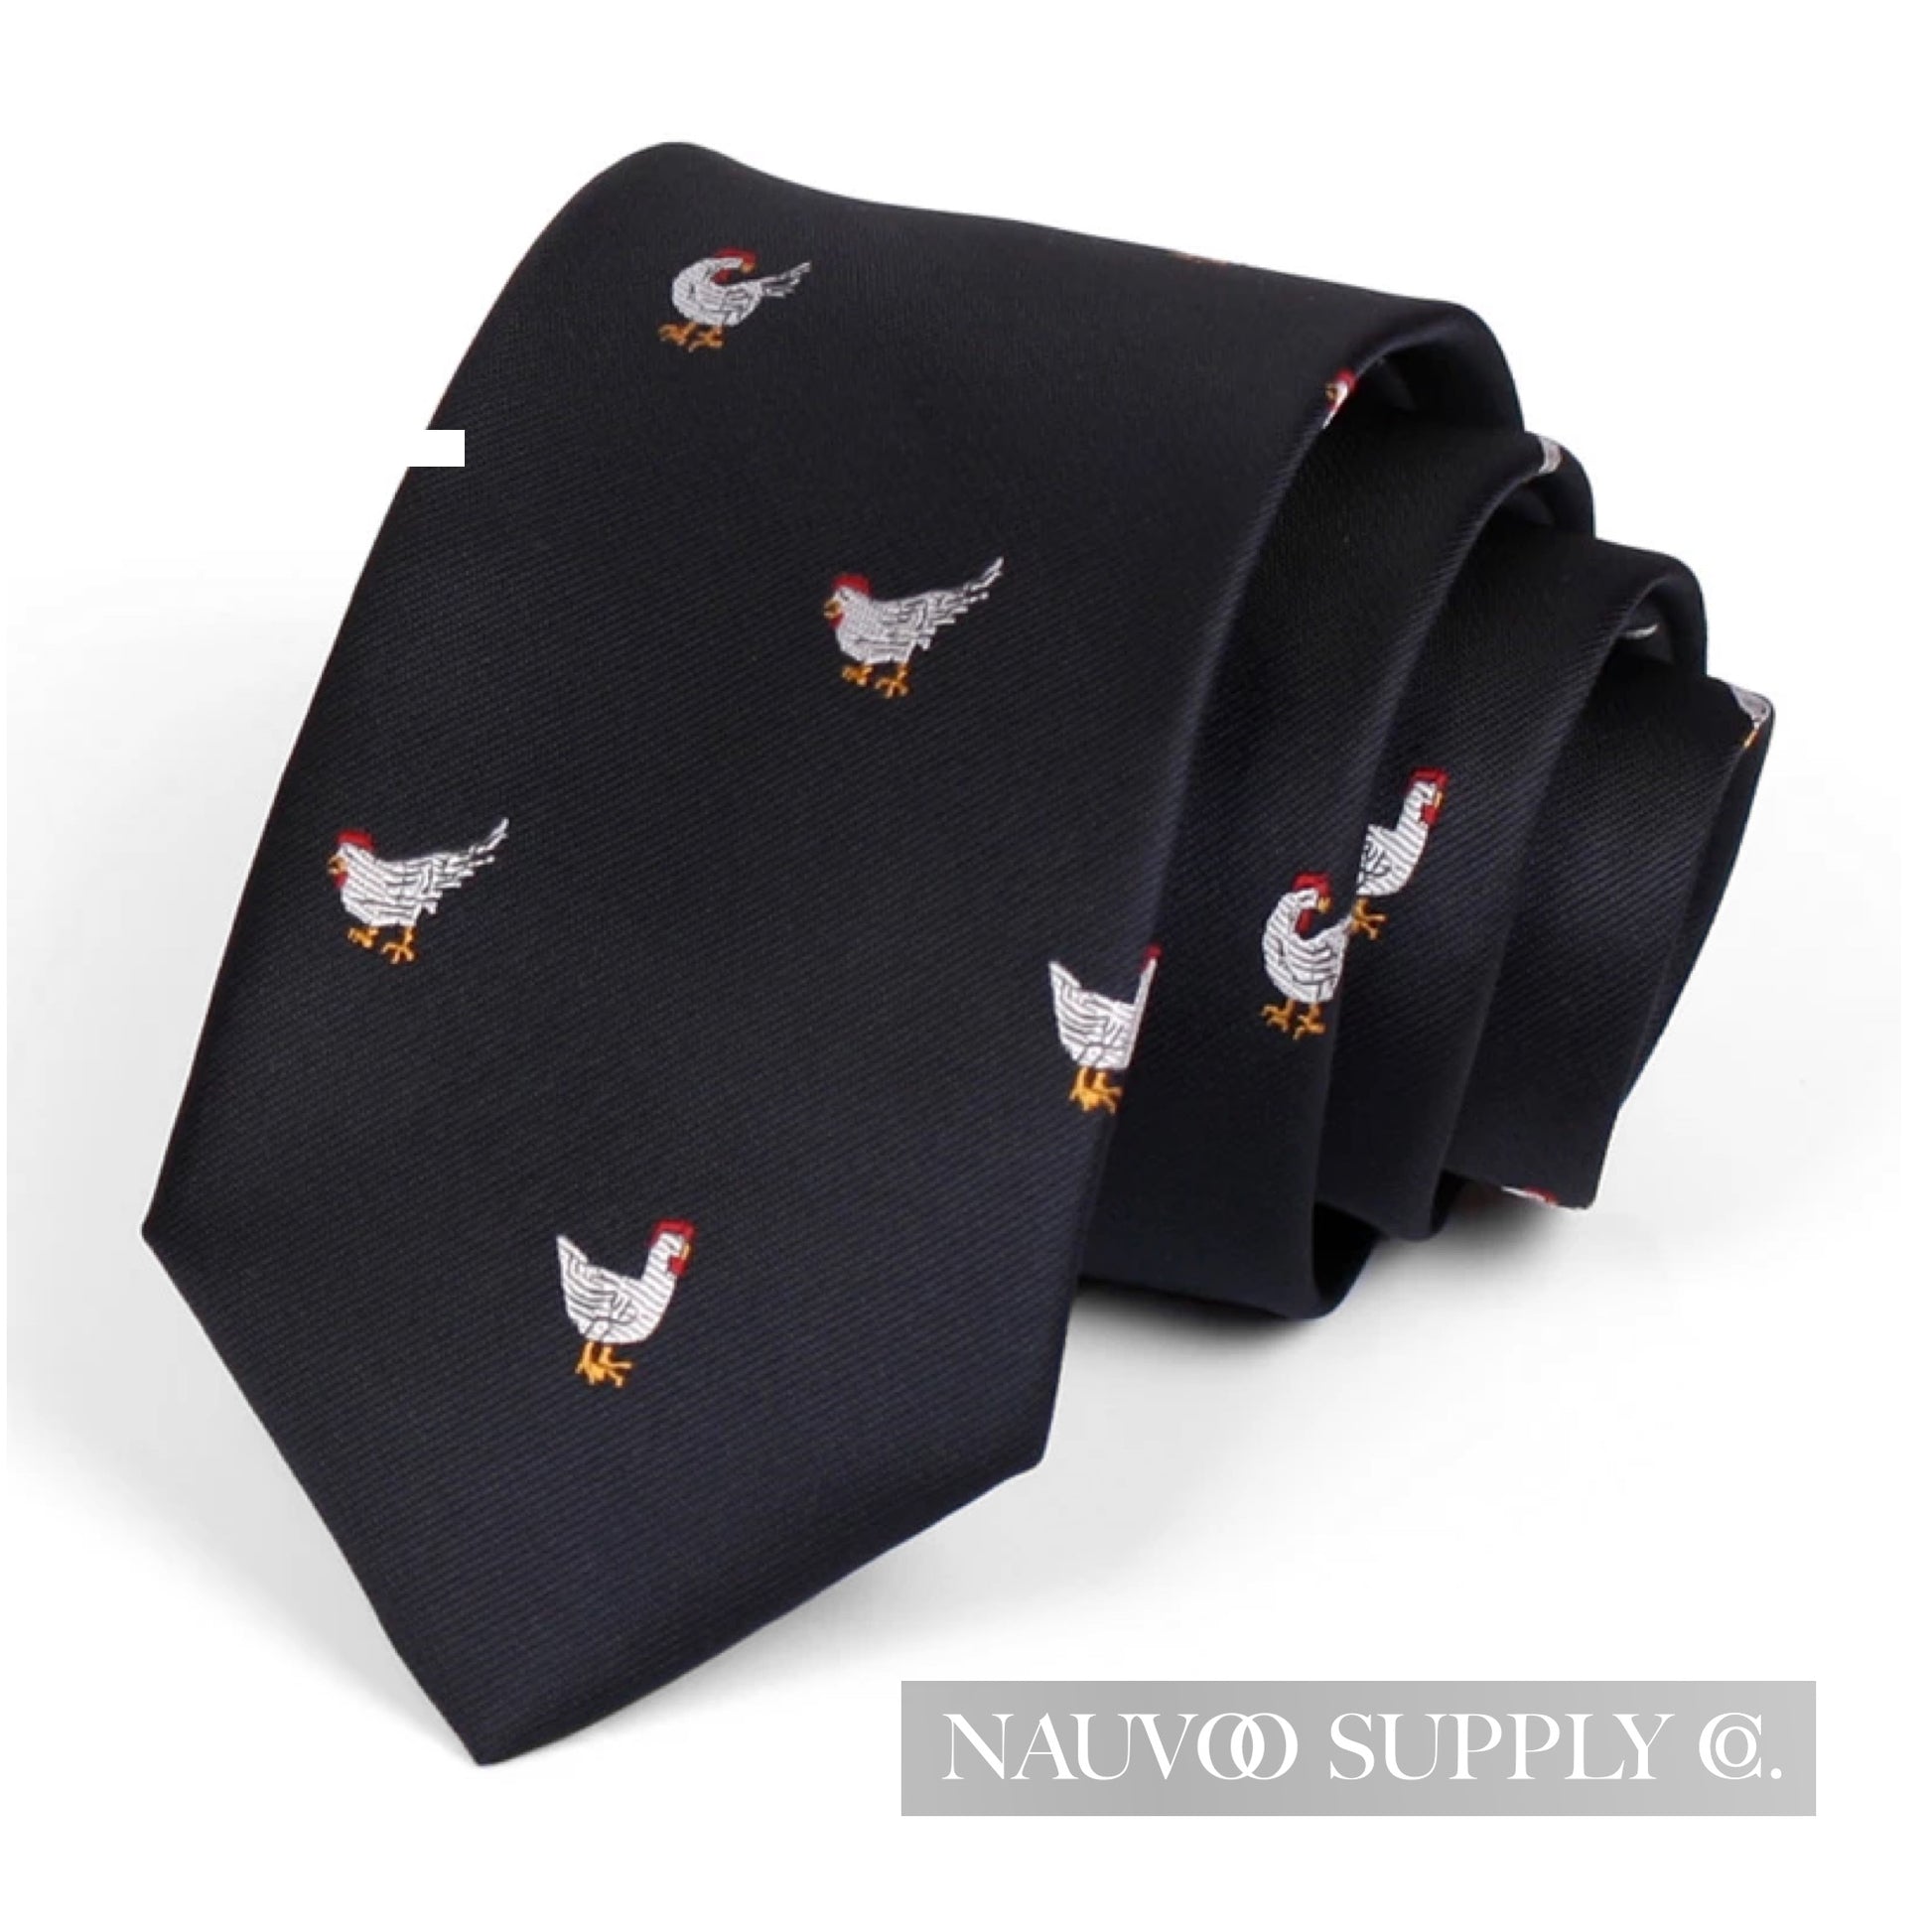 Black necktie with white chicken pattern